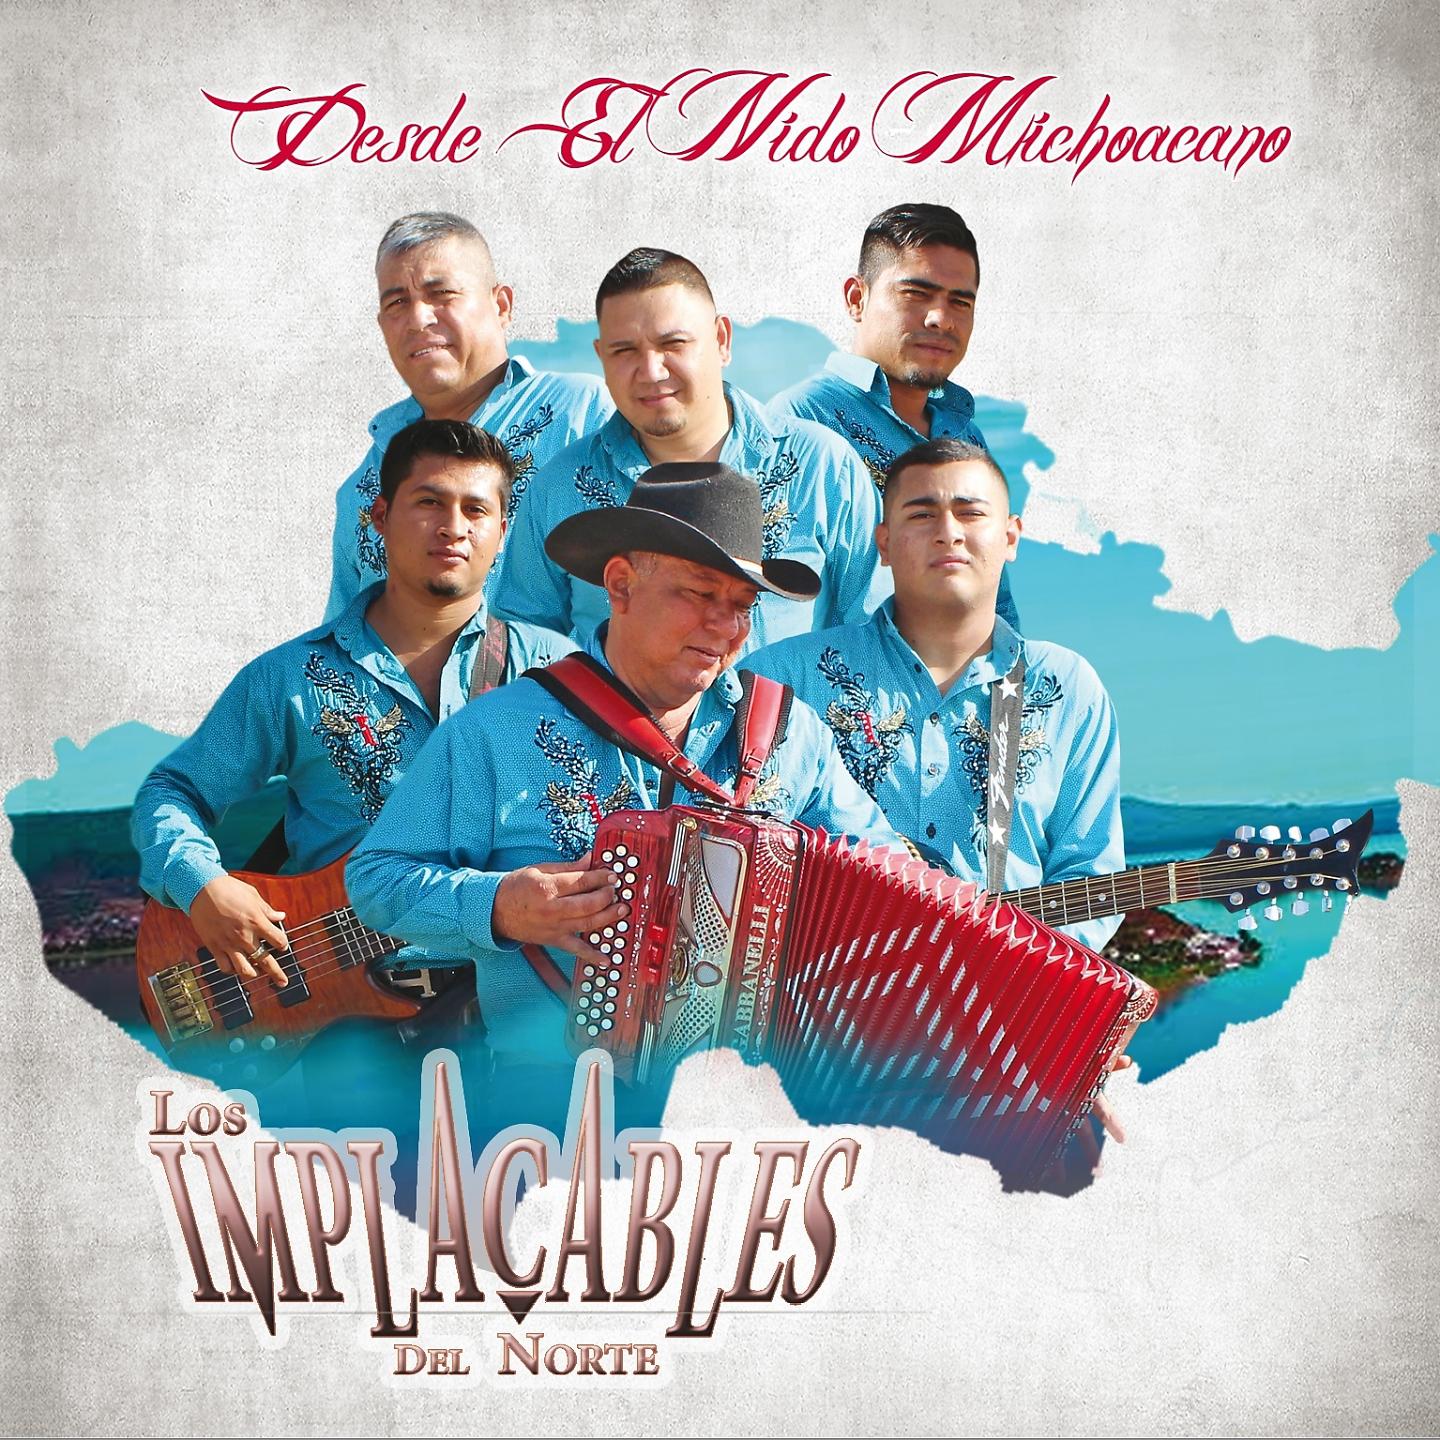 Постер альбома Desde el Nido Michoacano